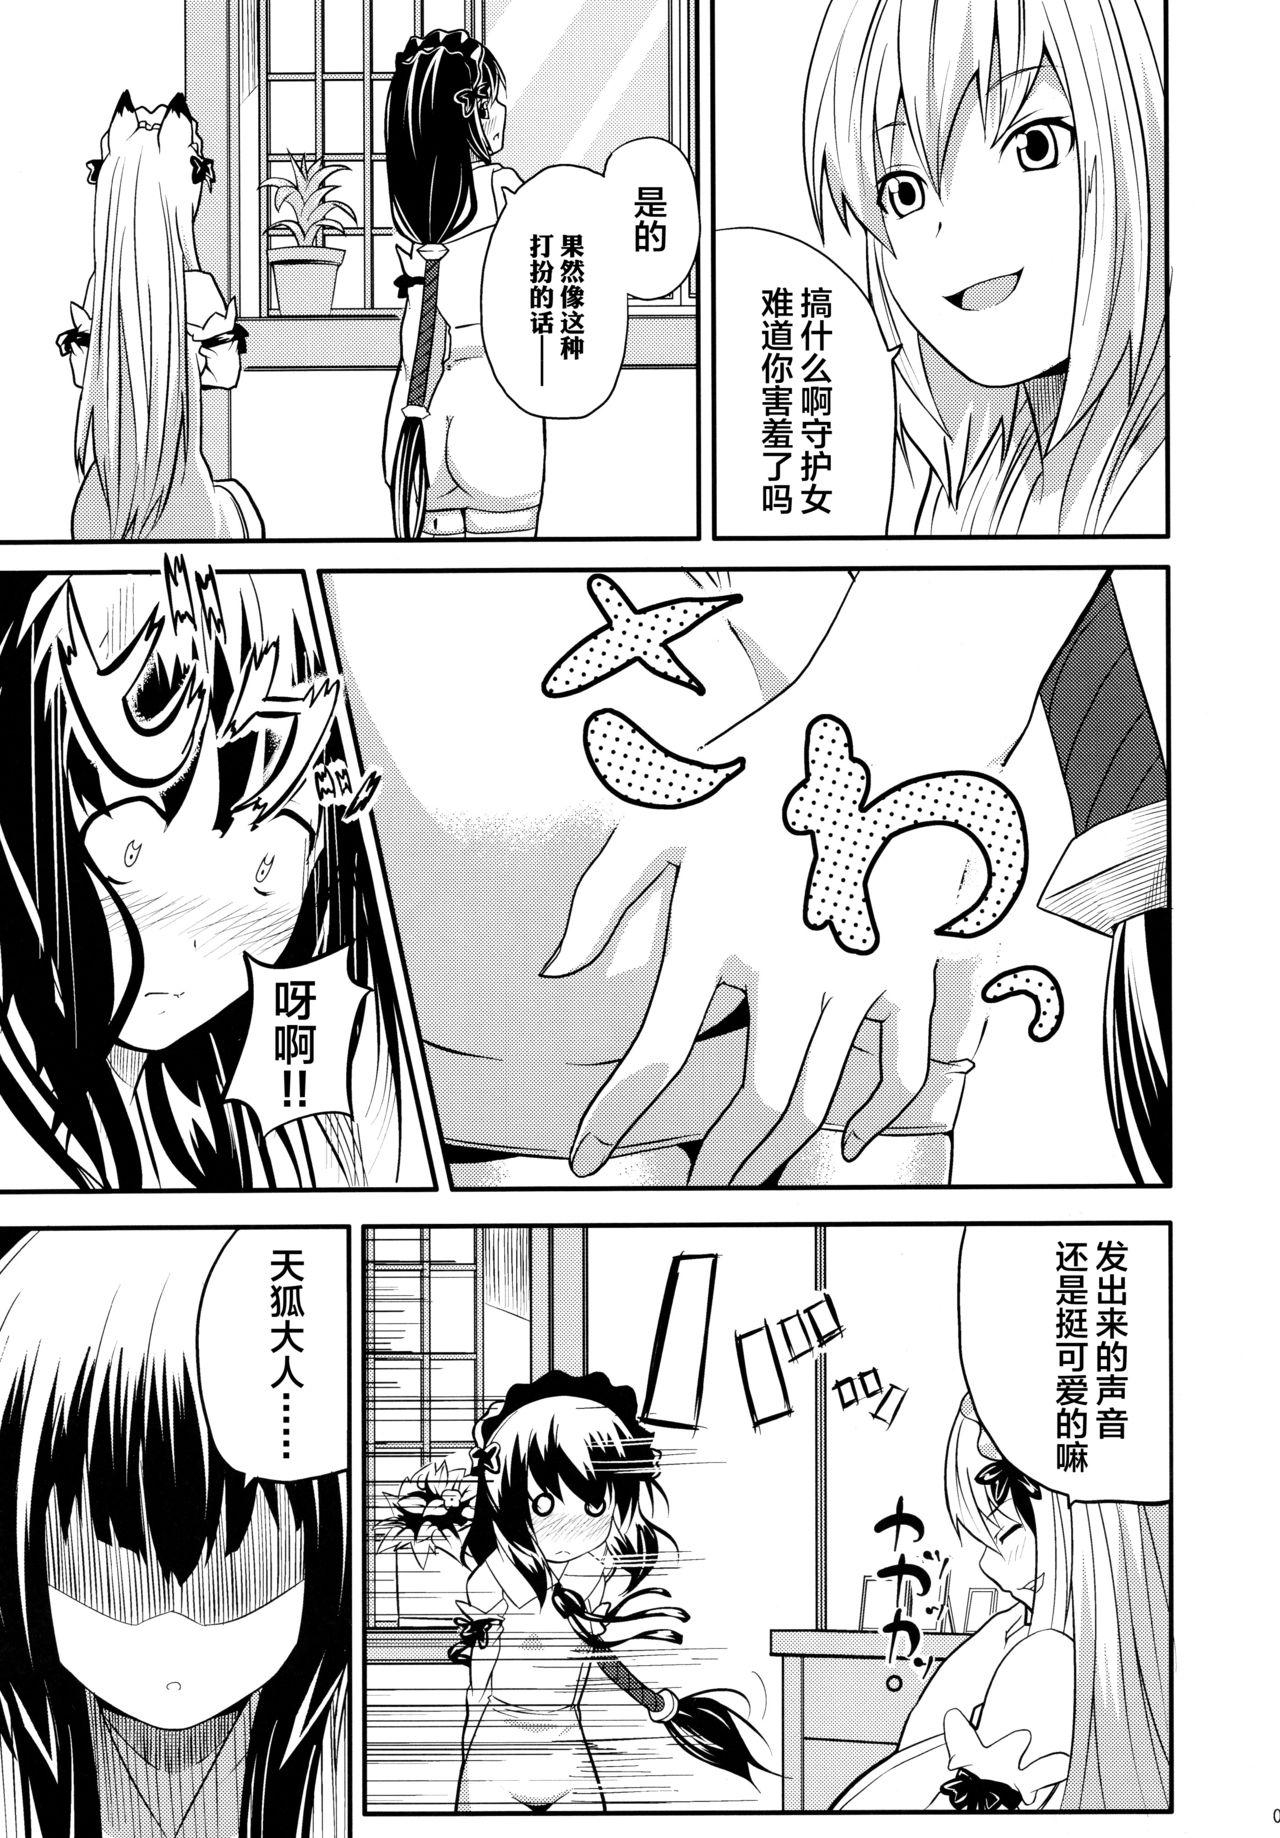 Leather Hare, Tokidoki Oinari-sama 4 - Wagaya no oinari sama Milfsex - Page 7